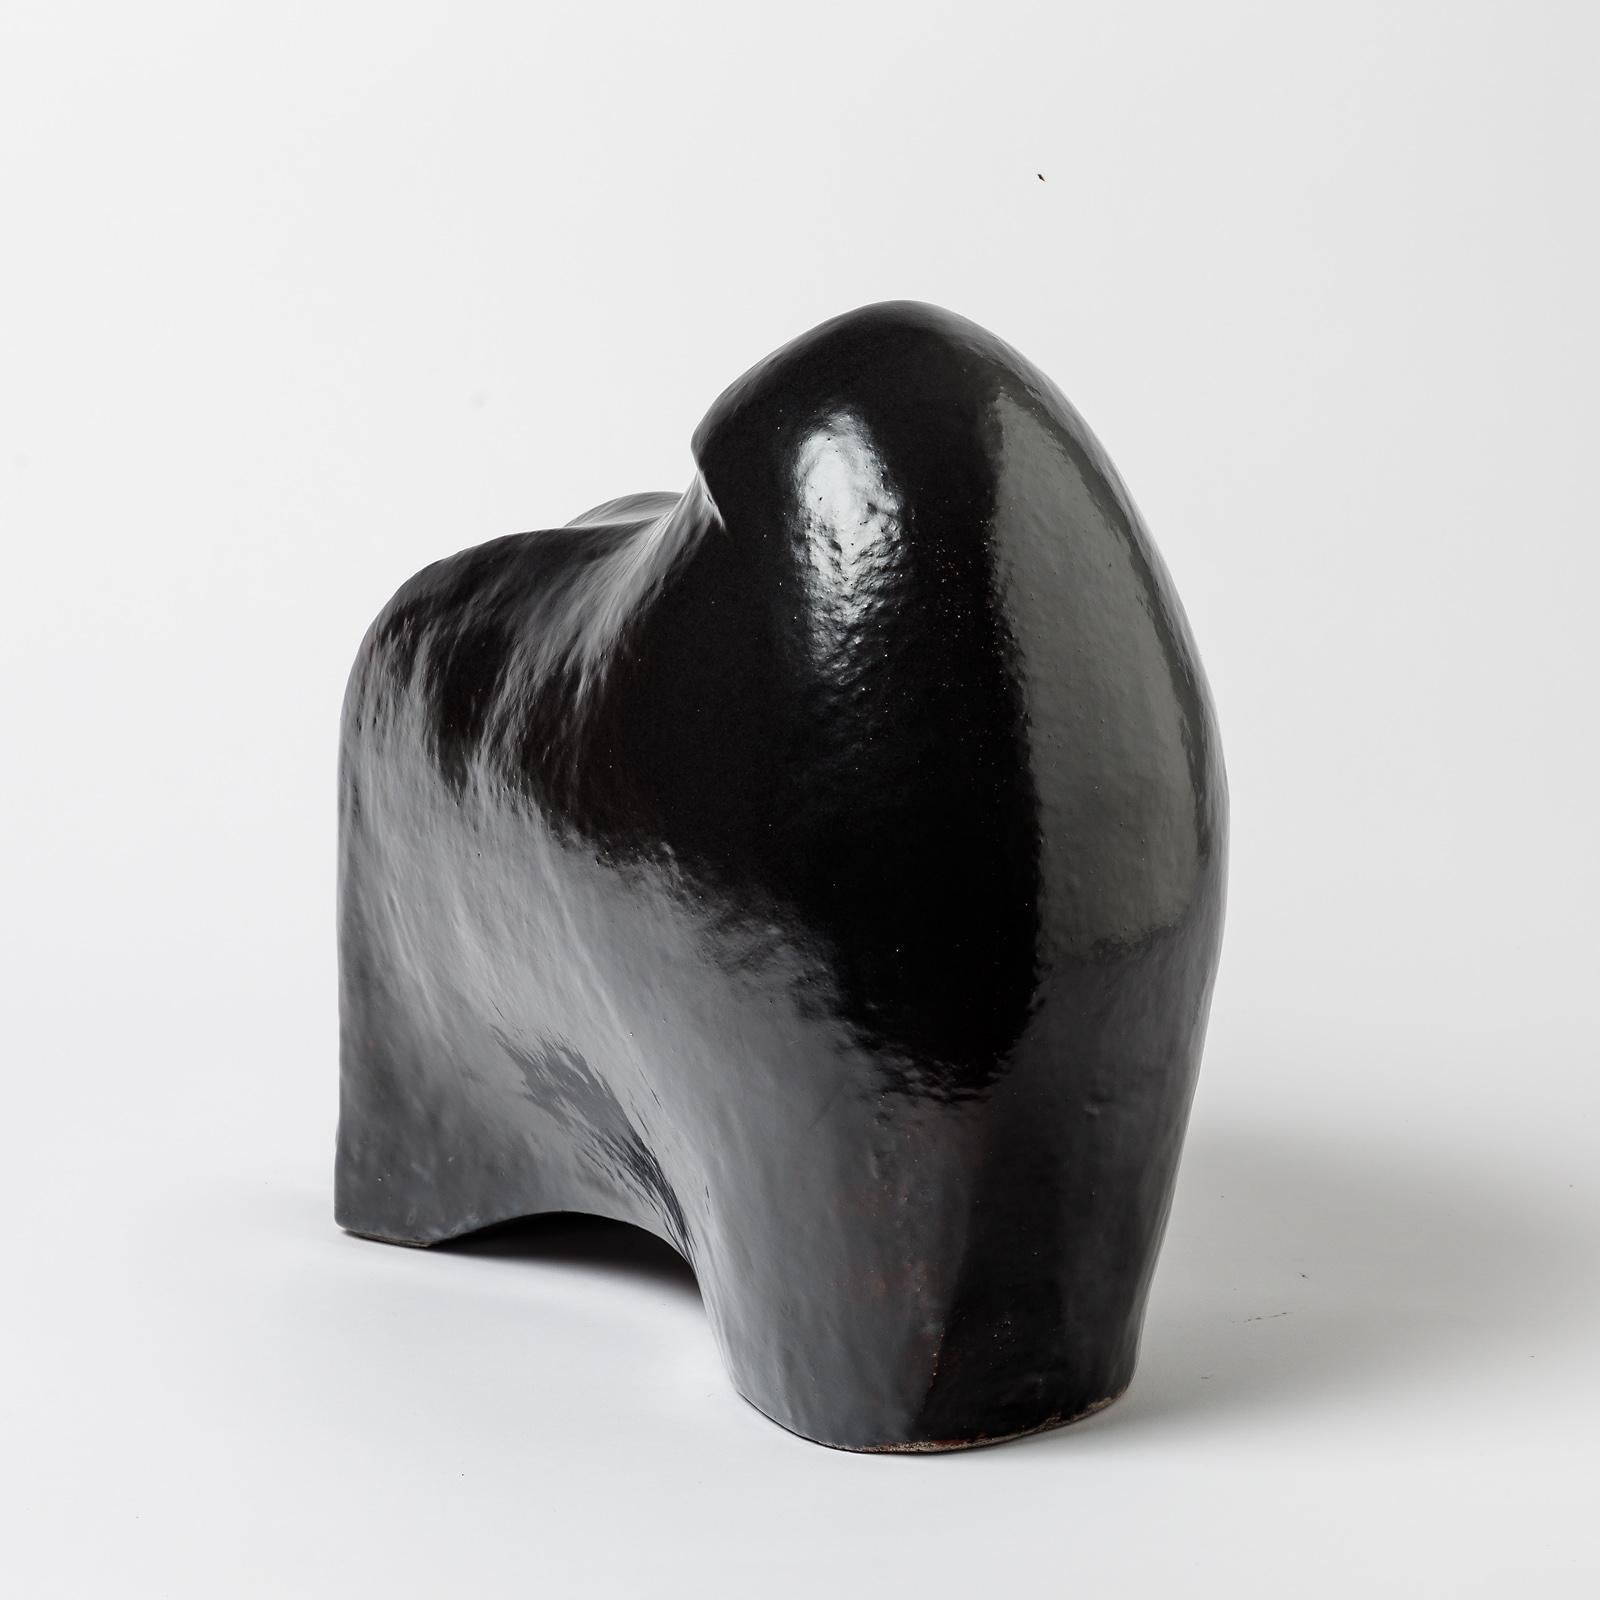 Beaux Arts Ceramic Sculpture with Black Glaze Decoration by Gisèle Buthod-garçon